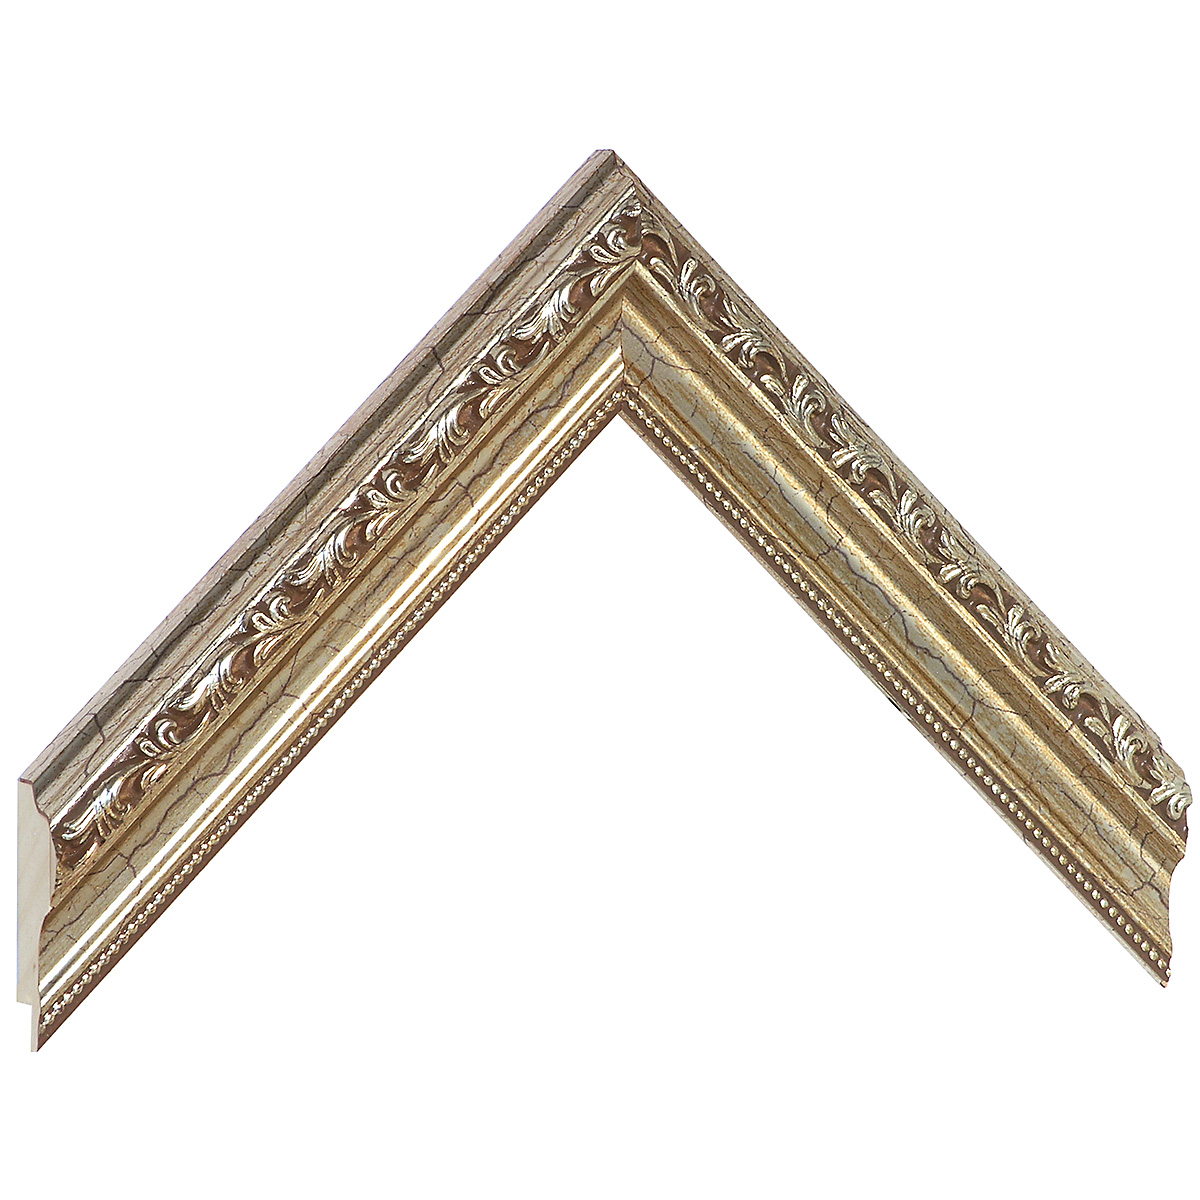 Baguette pin jointé larg.32mm - bronze, décorations en relief -  Échantillons